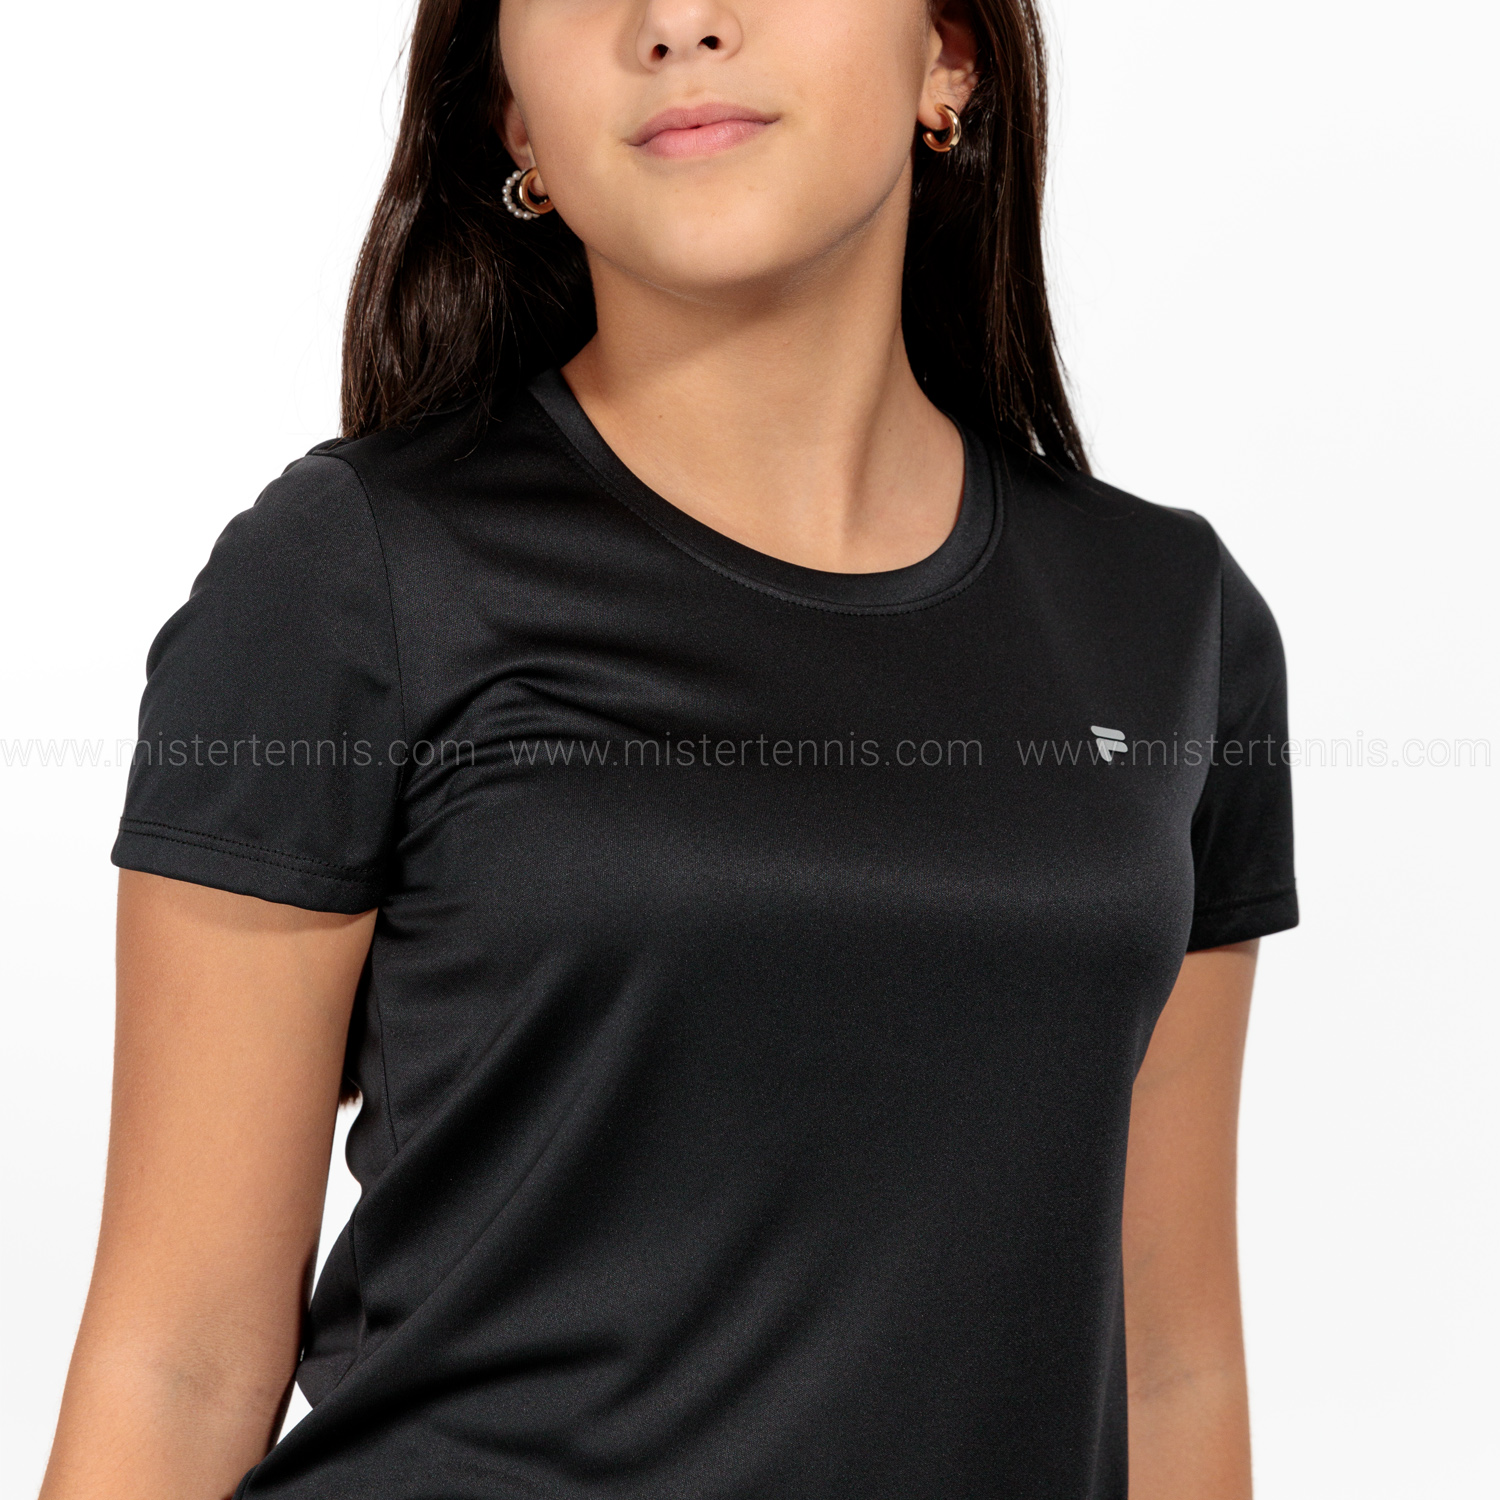 Fila Leonie Camiseta Niña - Black